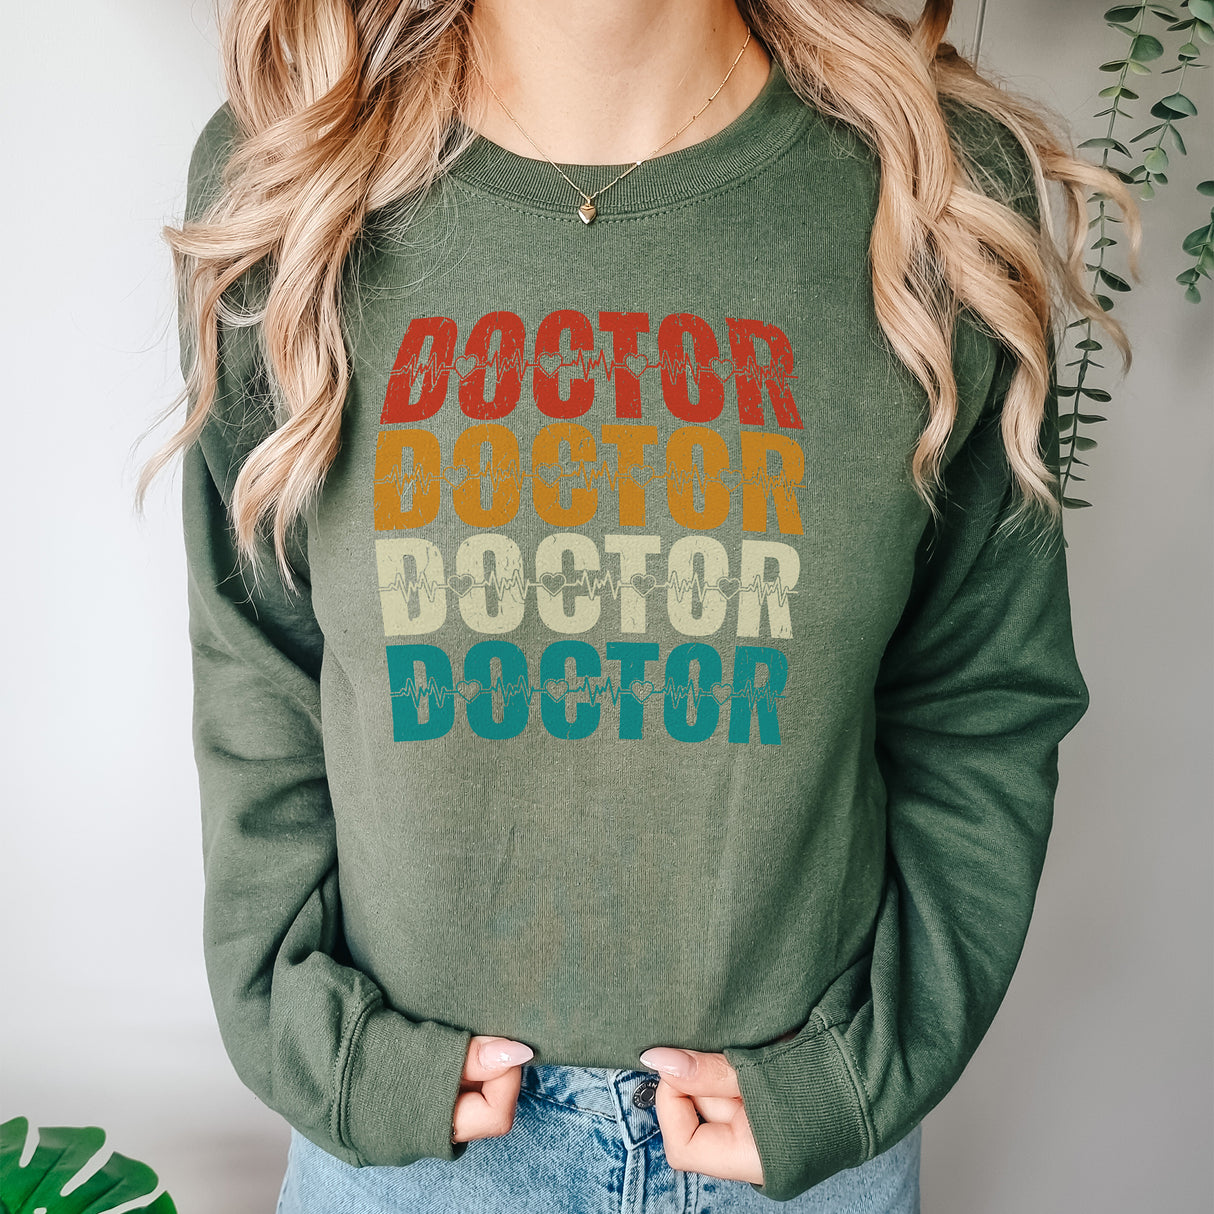 Doctor Adult Sweatshirt